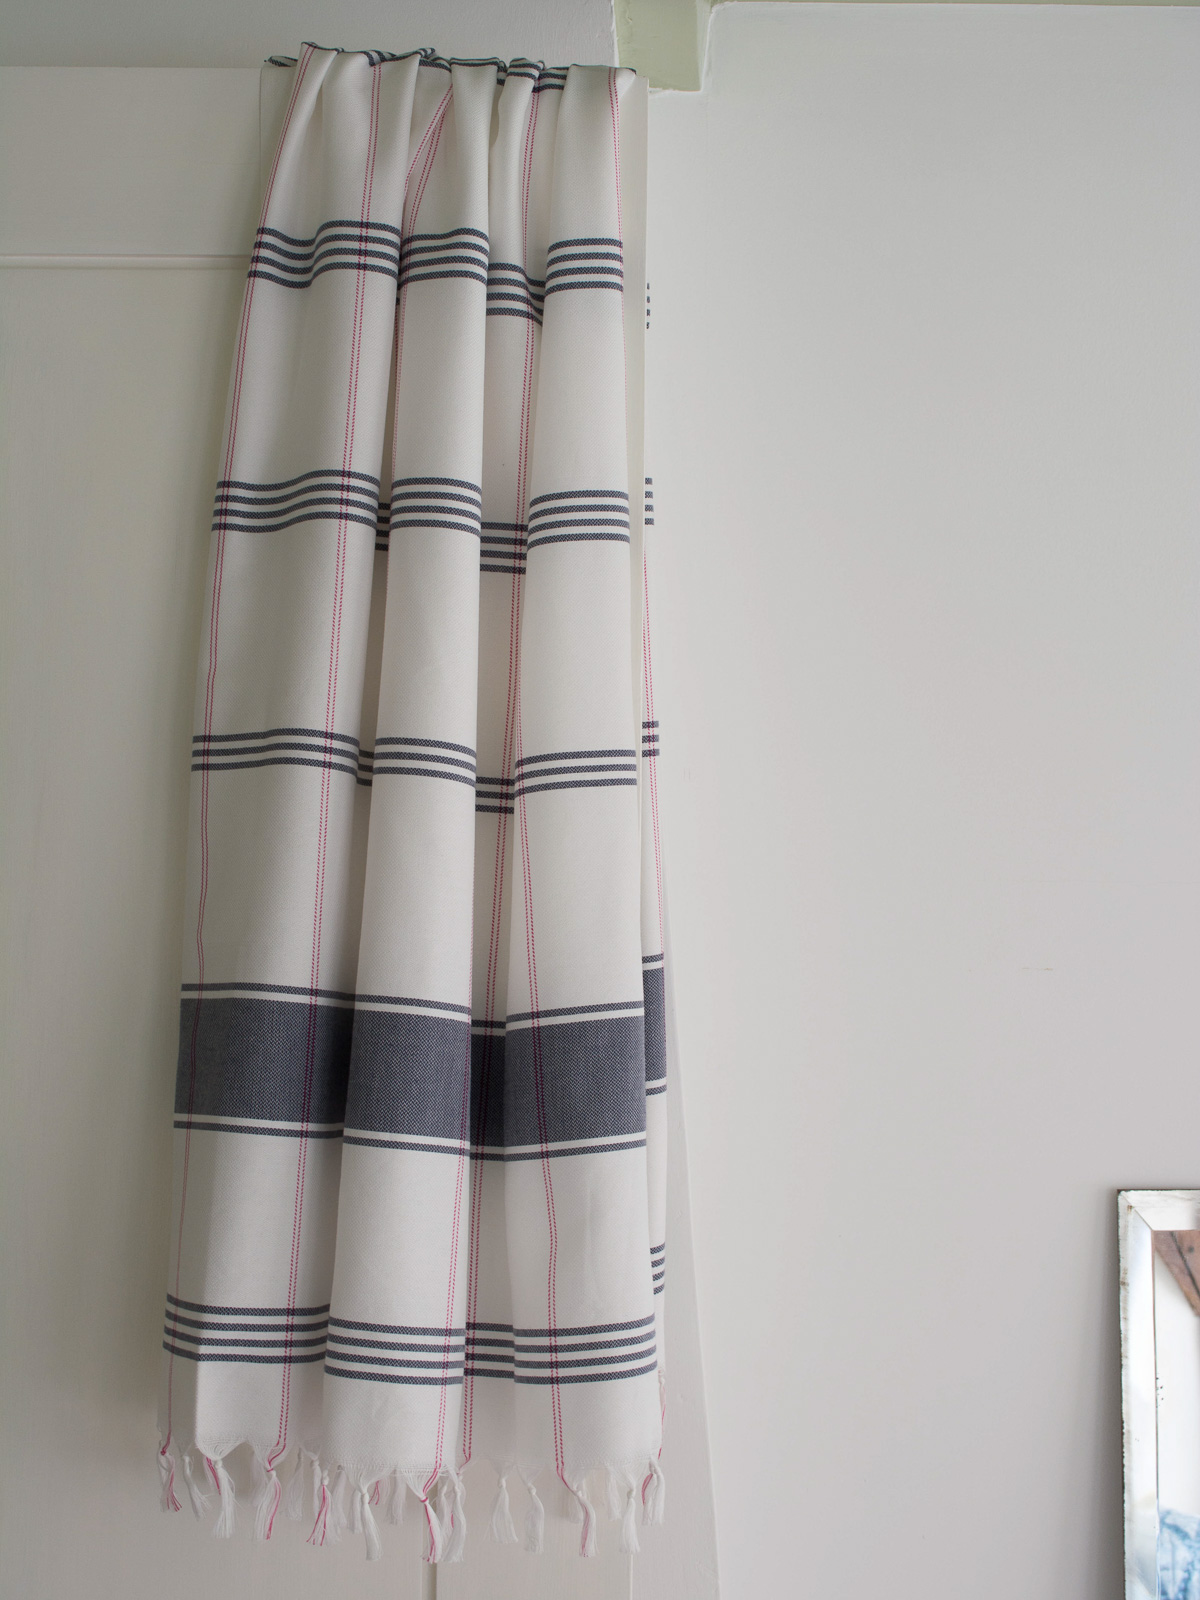 hammam towel checkered white/dark blue